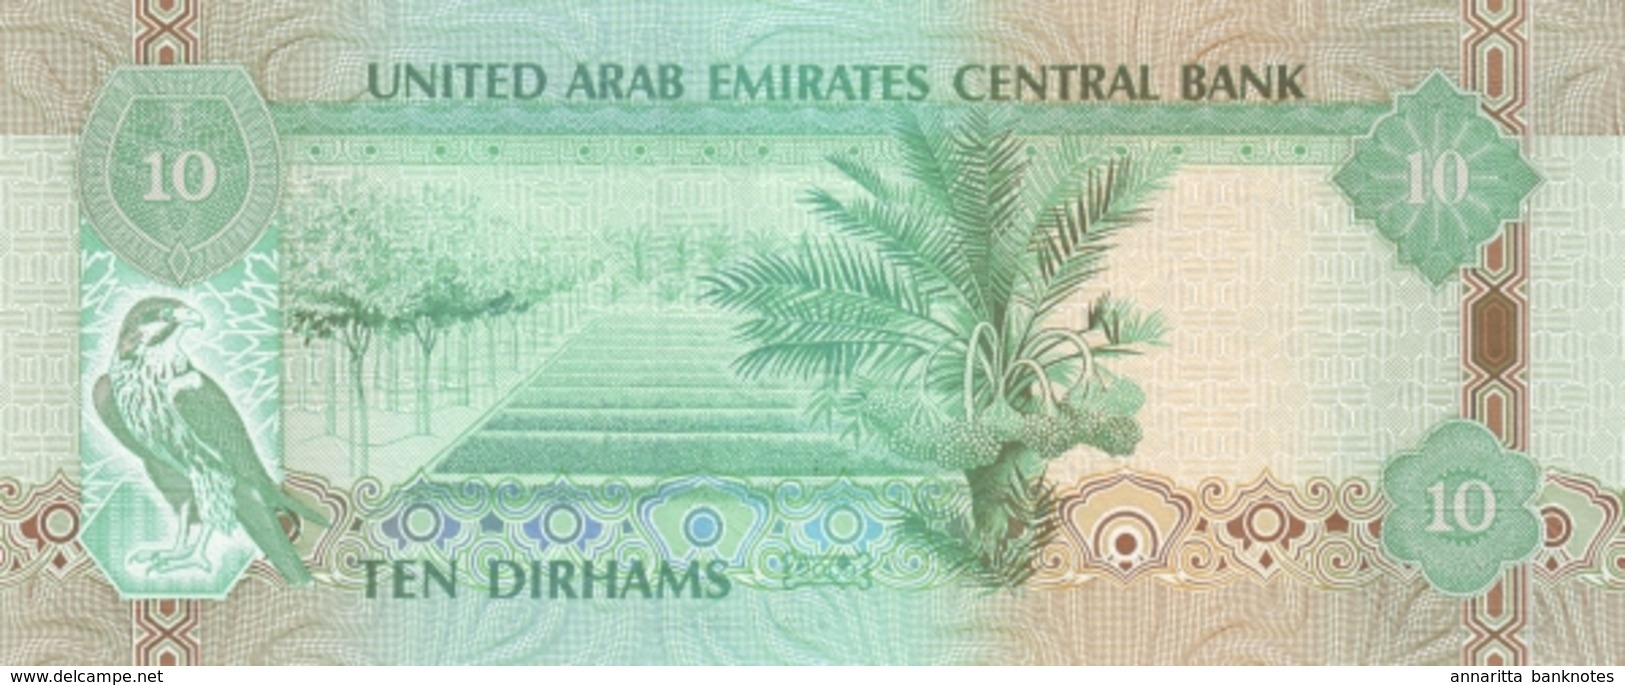 UNITED ARAB EMIRATES 10 DIRHAMS 1430 (2009) P-27a UNC  [AE227a] - Emirats Arabes Unis